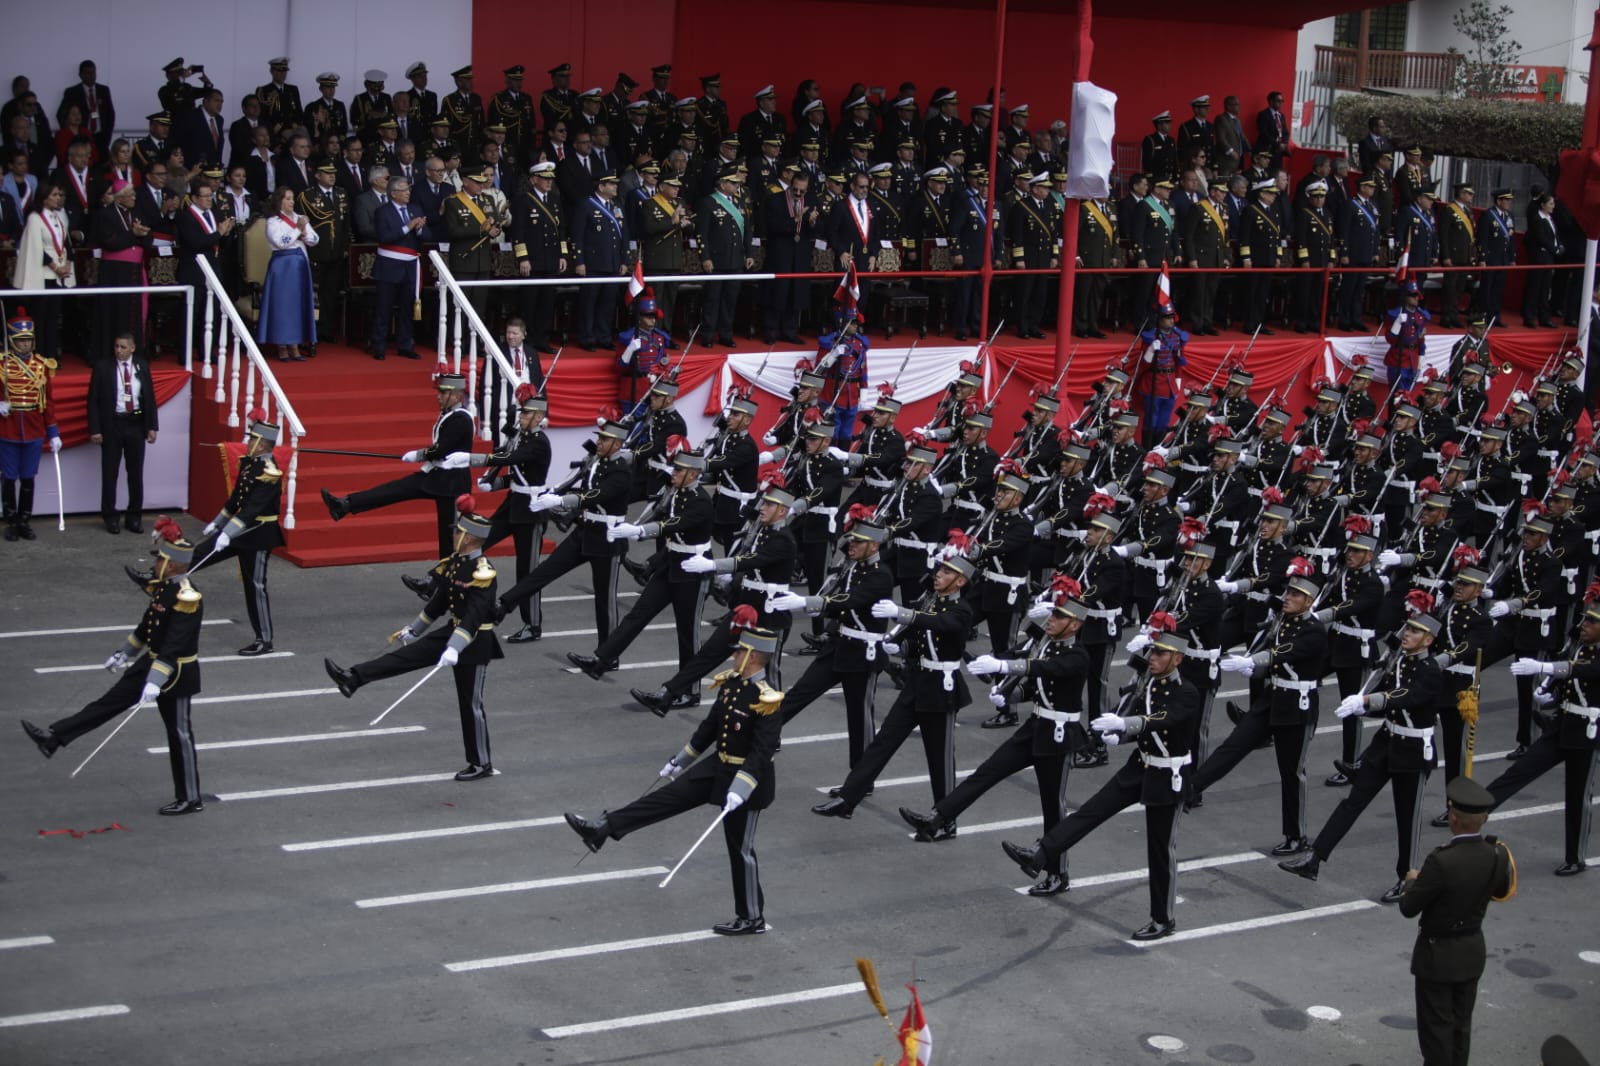 (1) FIRMES Y ENTUSIASTAS. Con paso marcial, cadetes del colegio militar Leoncio Prado desfilan ante la atenta mirada de las autoridades.